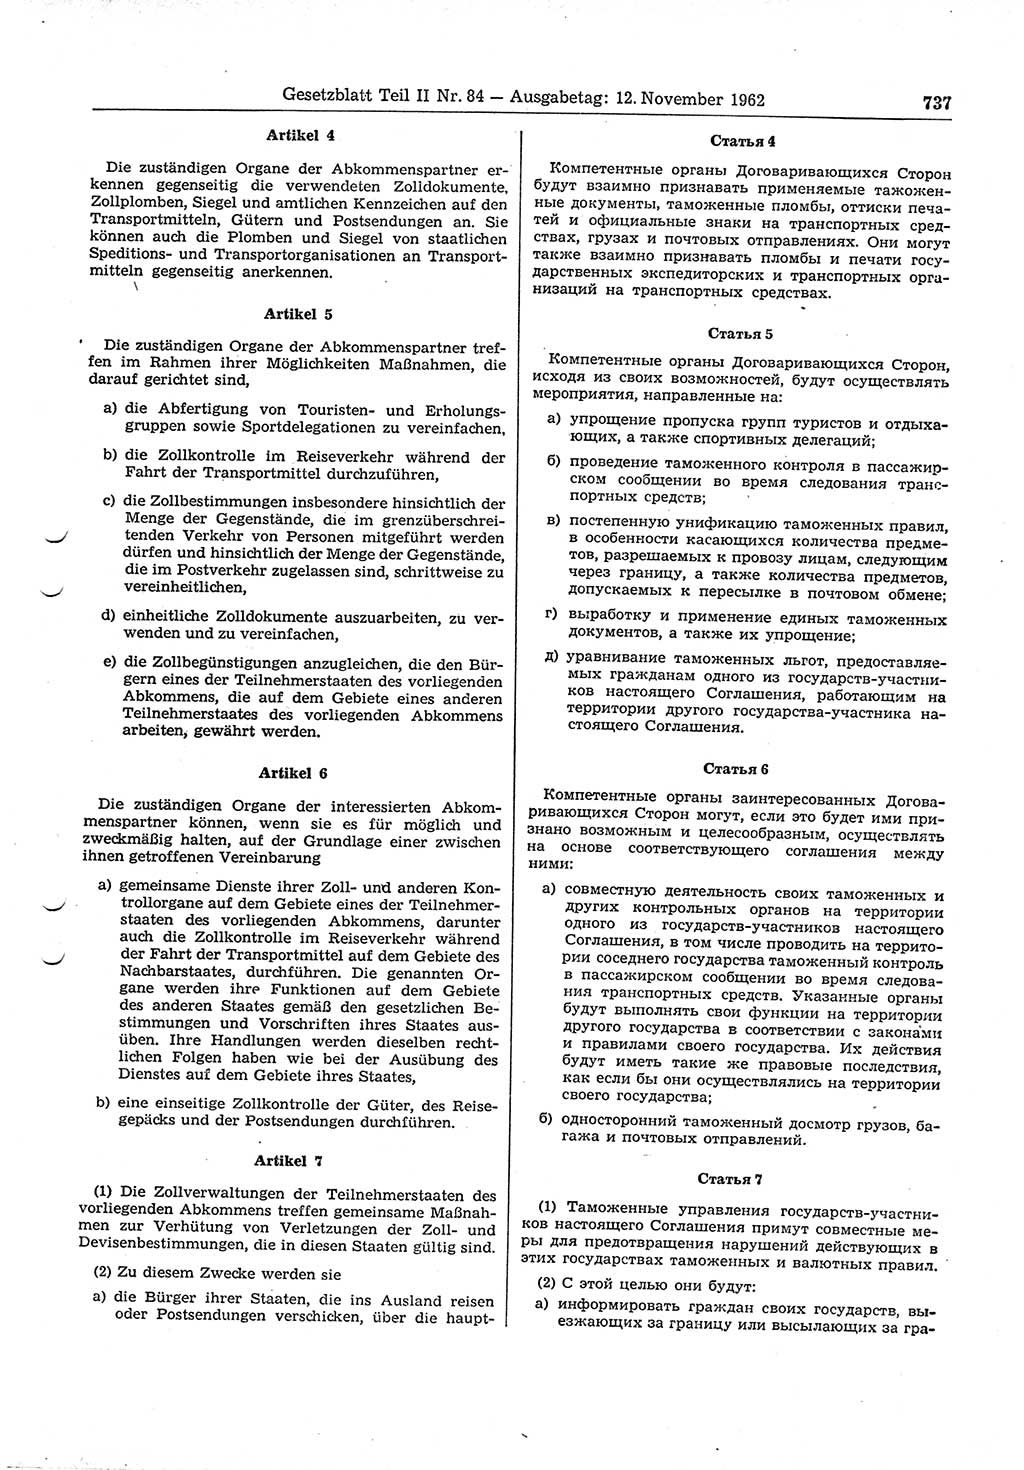 Gesetzblatt (GBl.) der Deutschen Demokratischen Republik (DDR) Teil ⅠⅠ 1962, Seite 737 (GBl. DDR ⅠⅠ 1962, S. 737)